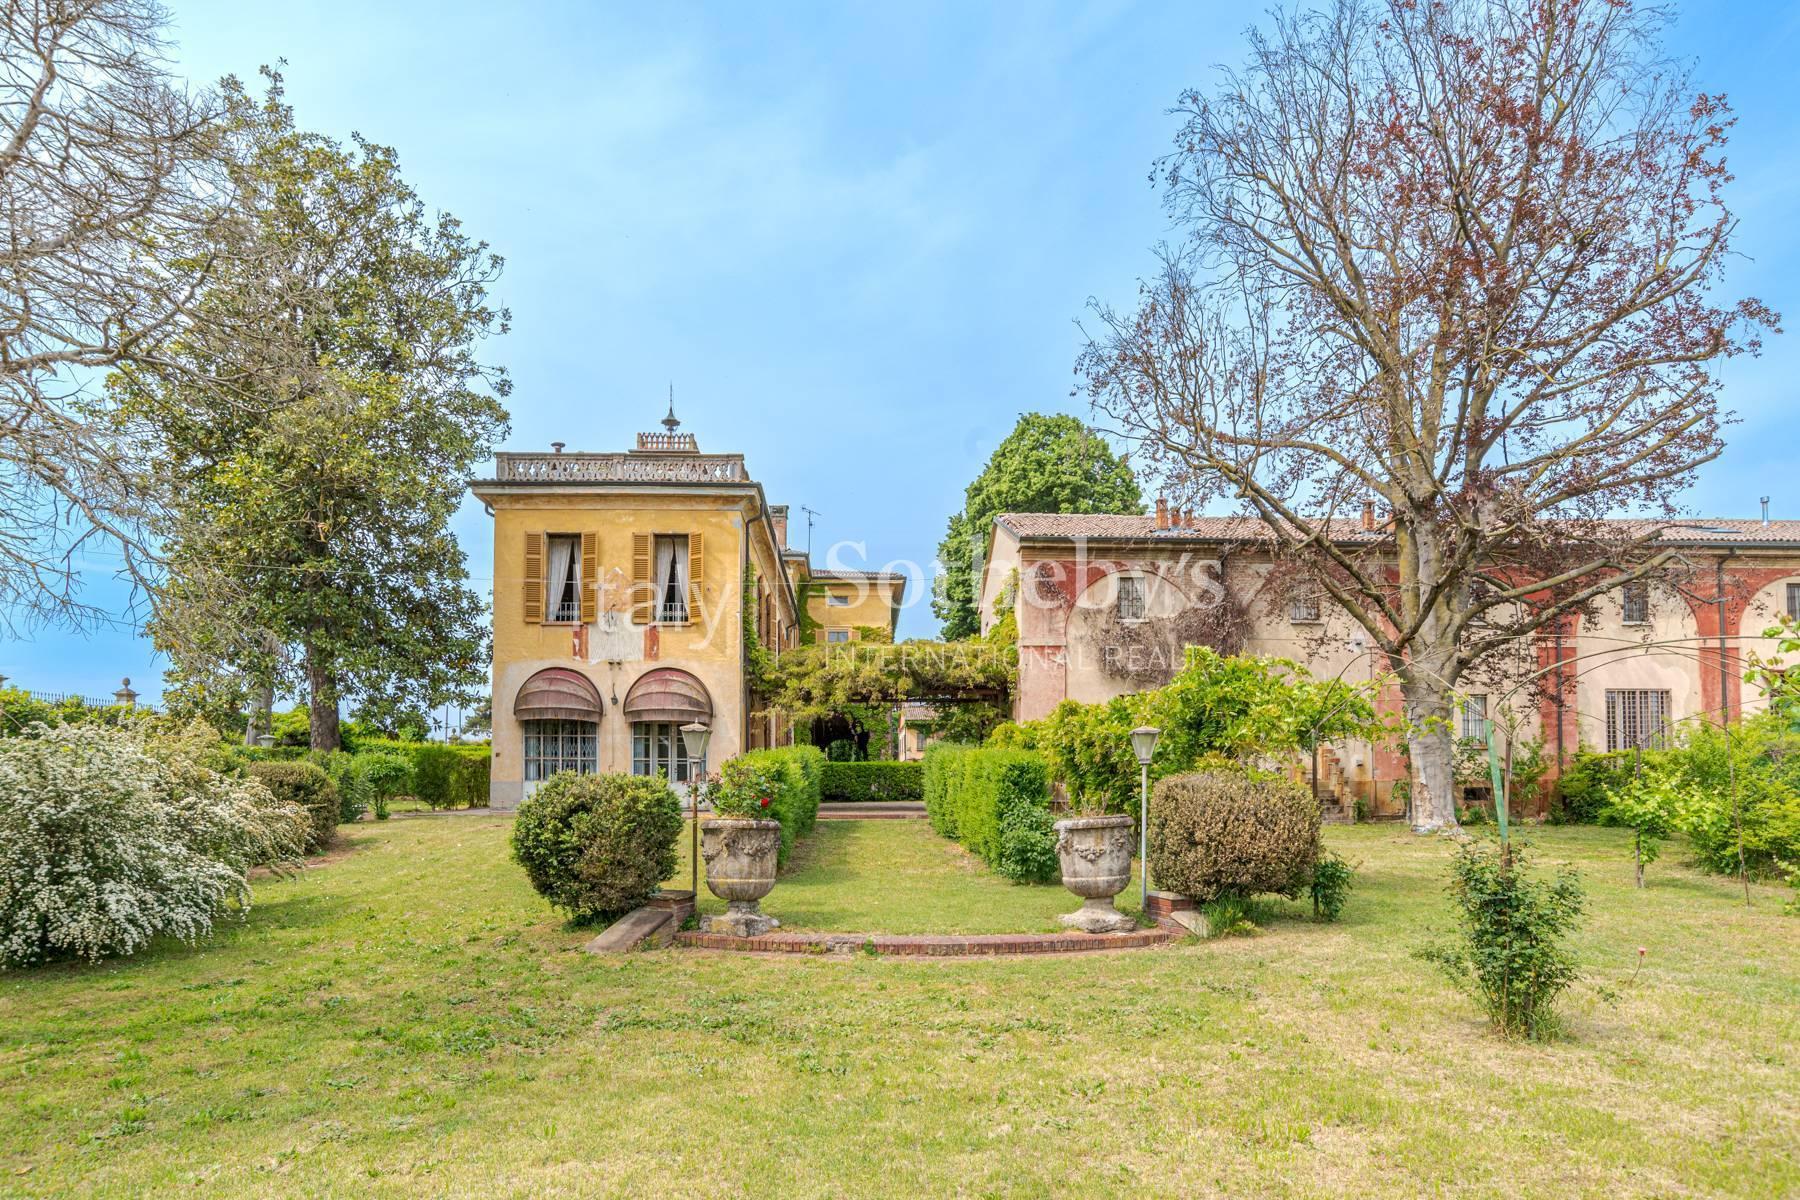 Cascina Bella - 18th century villa with park in Oltrepo' Pavese - 11